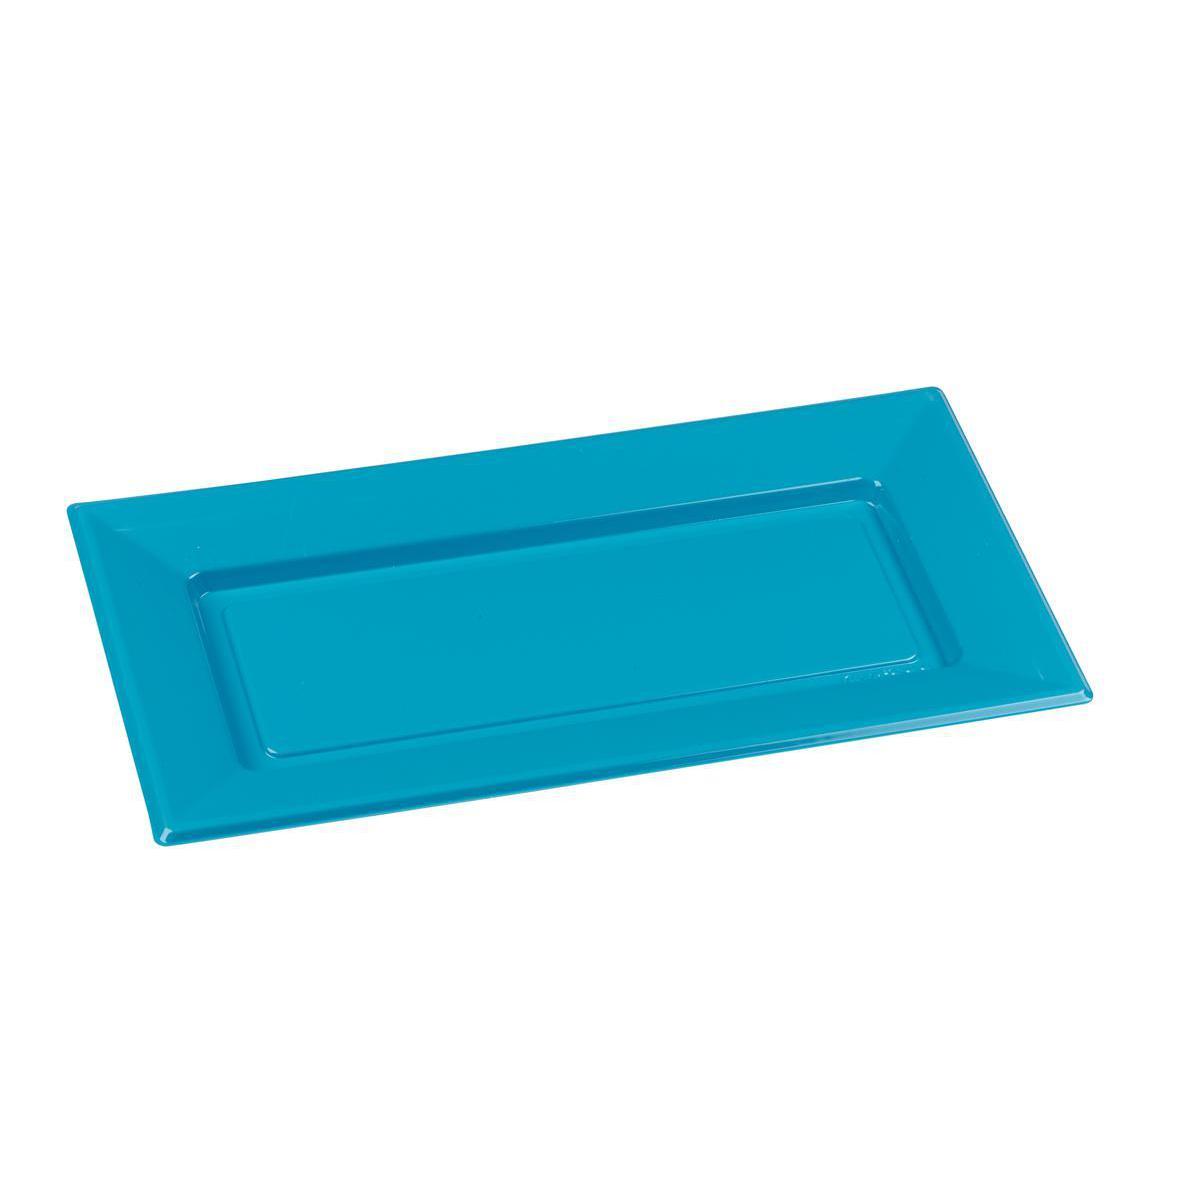 Lot de 2 plateaux - plastique -19 cm x 37 cm - Bleu turquoise